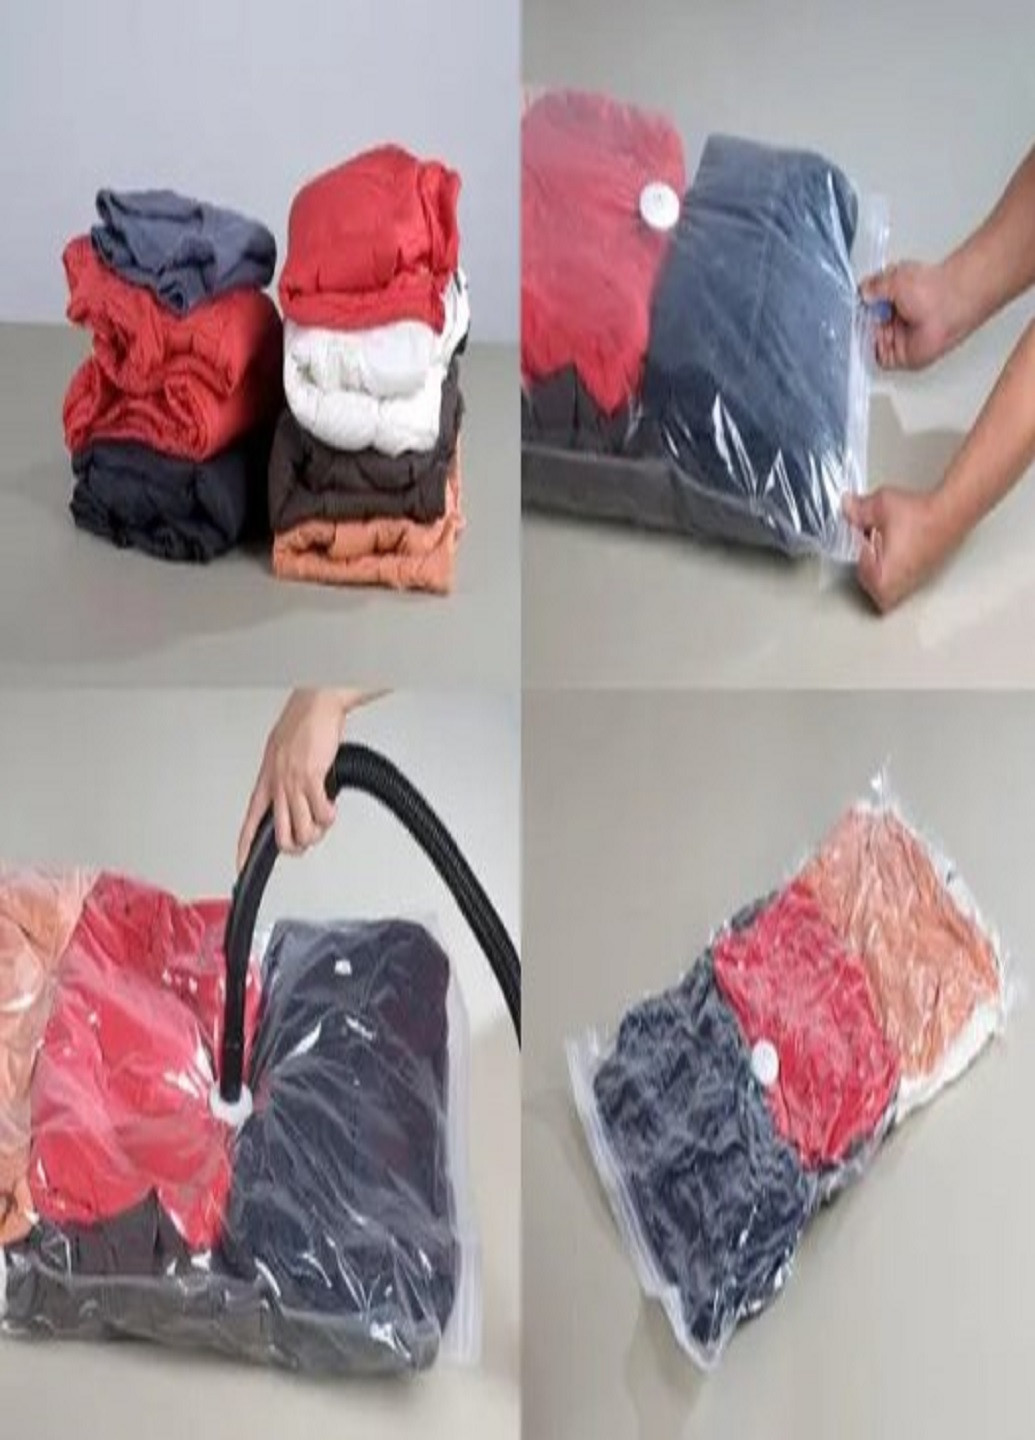 Вакуумный пакет мешок VACUUM BAG 50*60 см для хранения одежды вещей VTech (262454238)